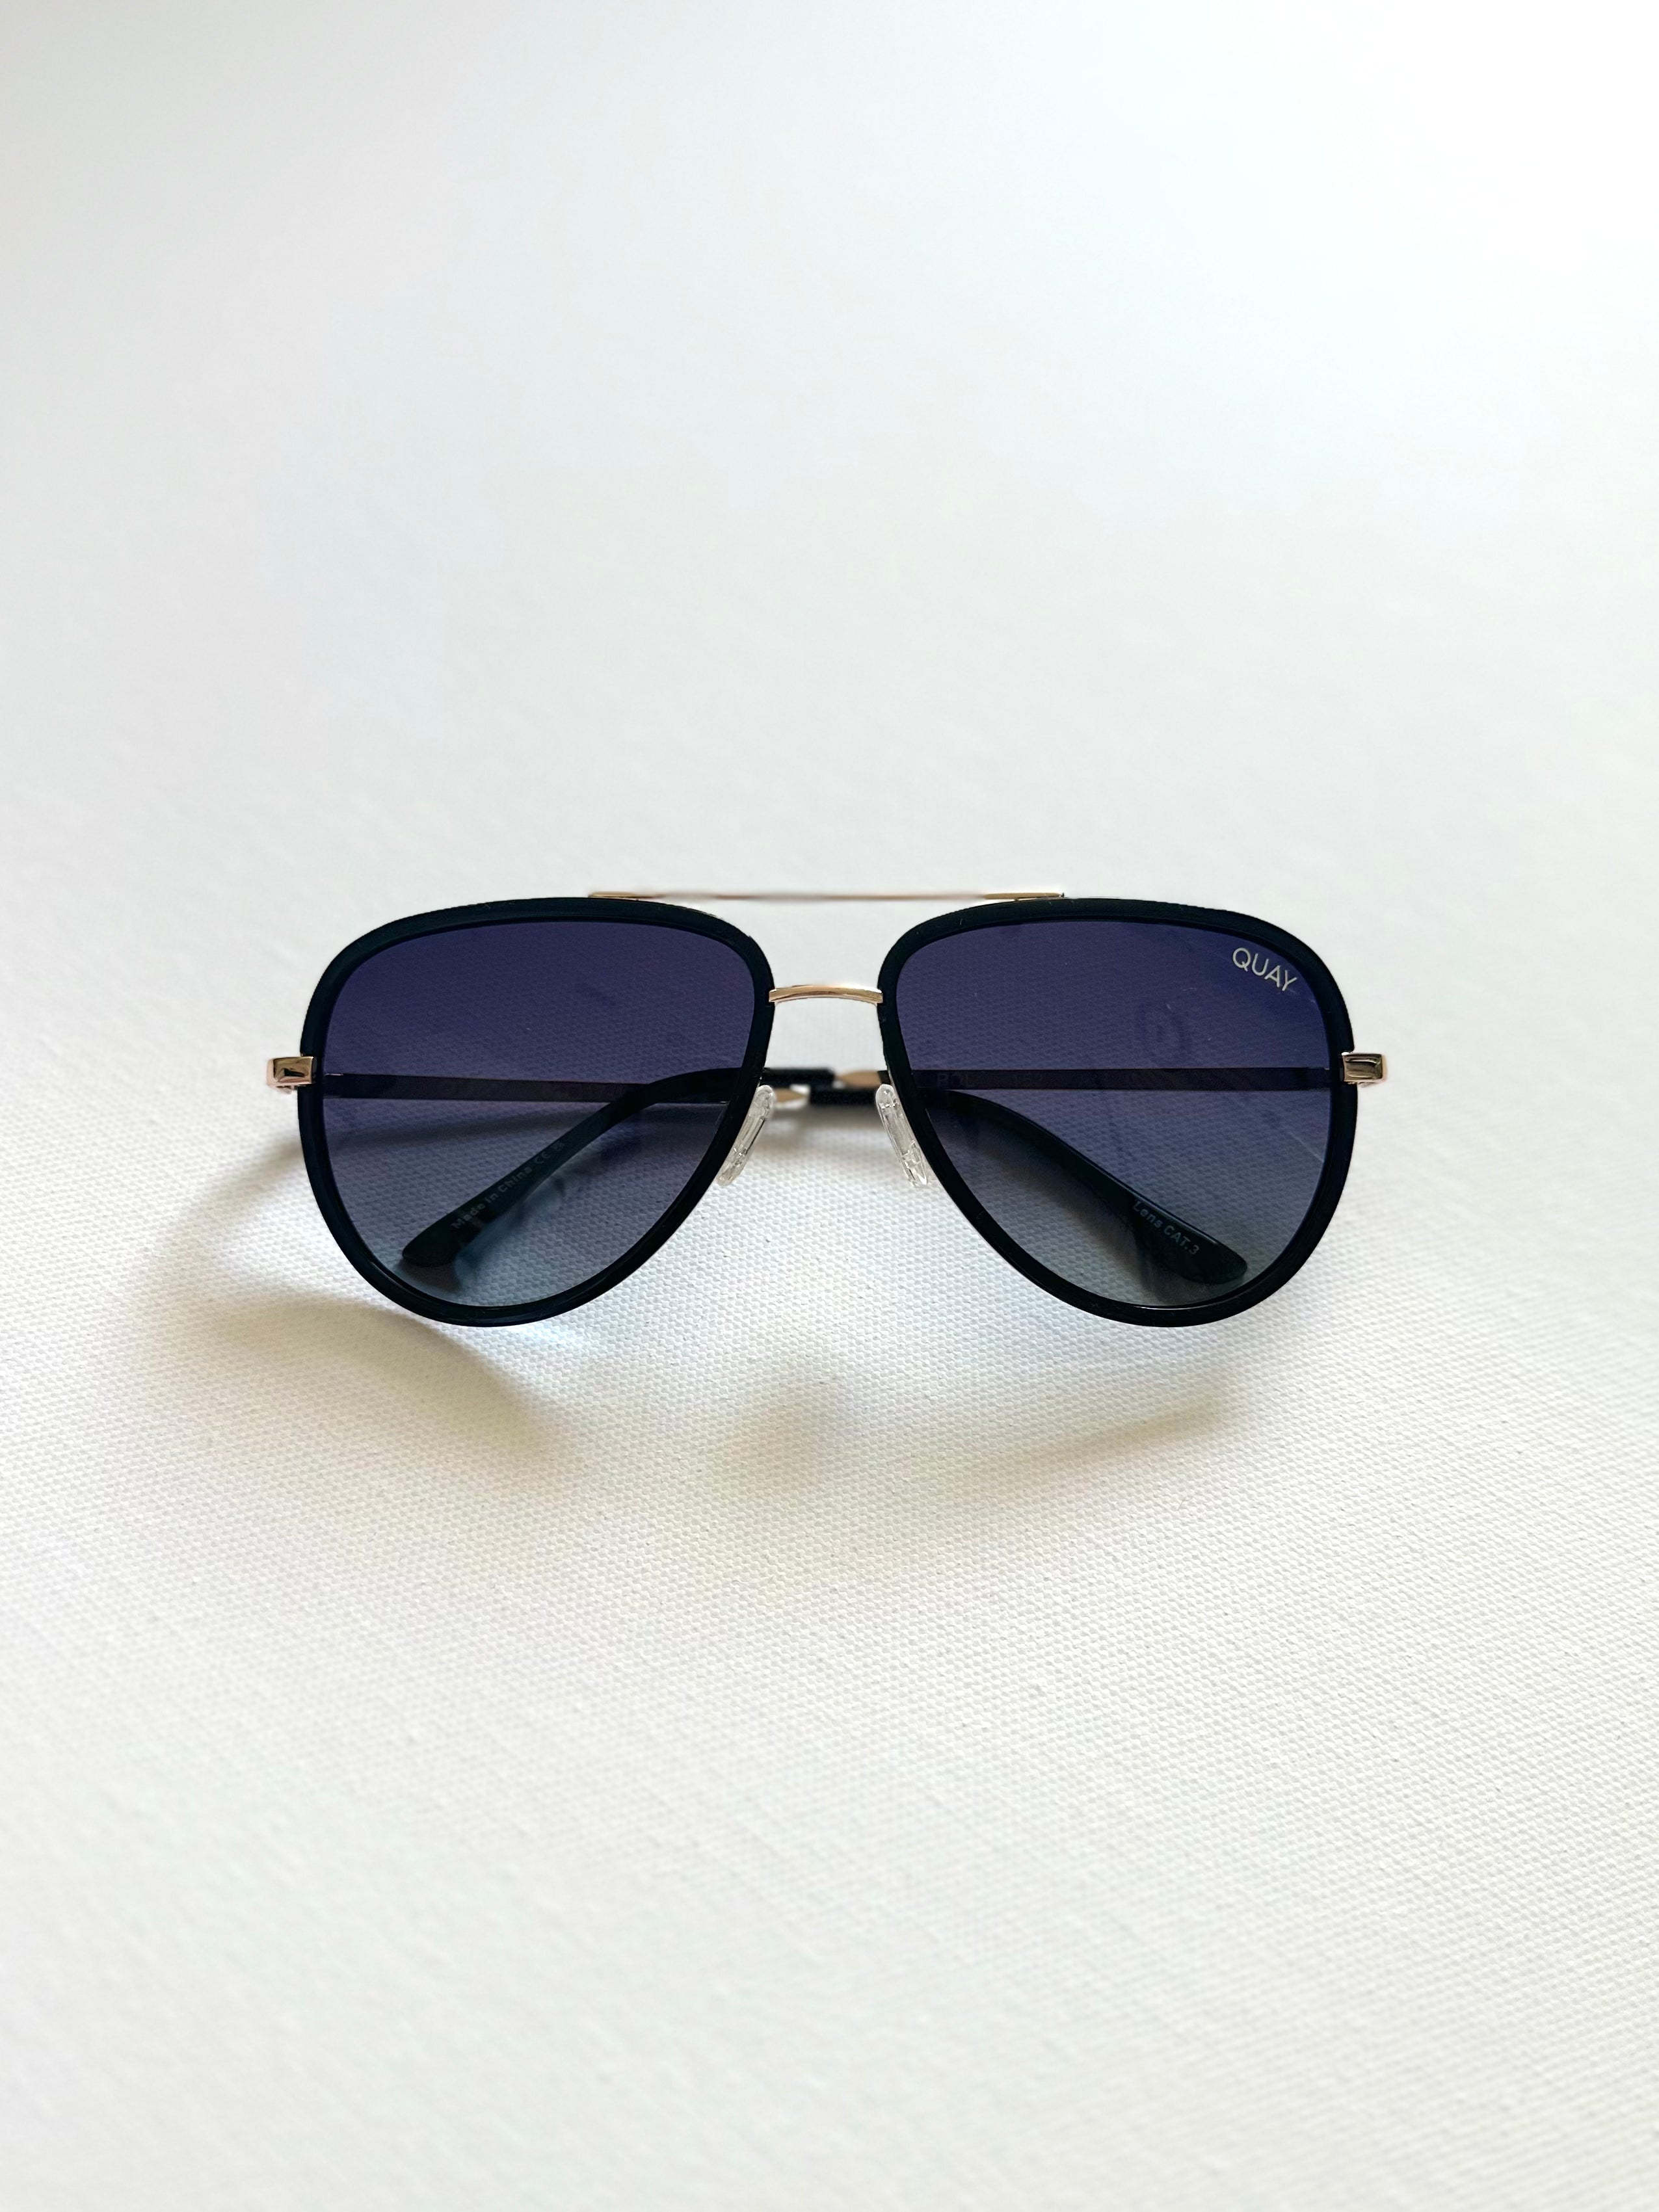 All In Polarized Sunglasses- Black